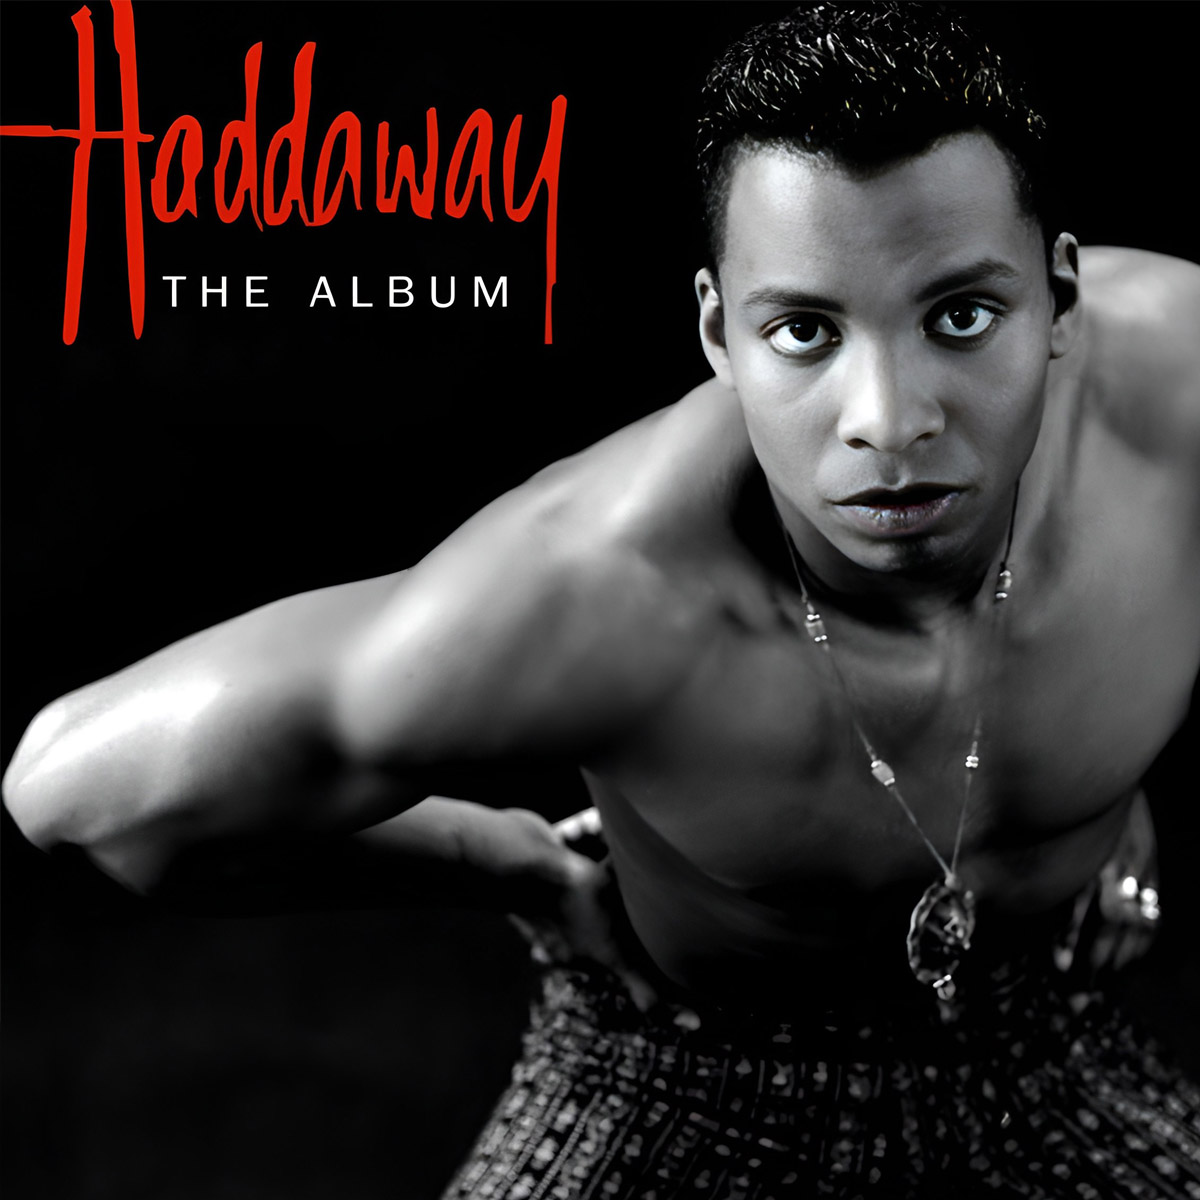 Cover für Haddaway's Debütalbum